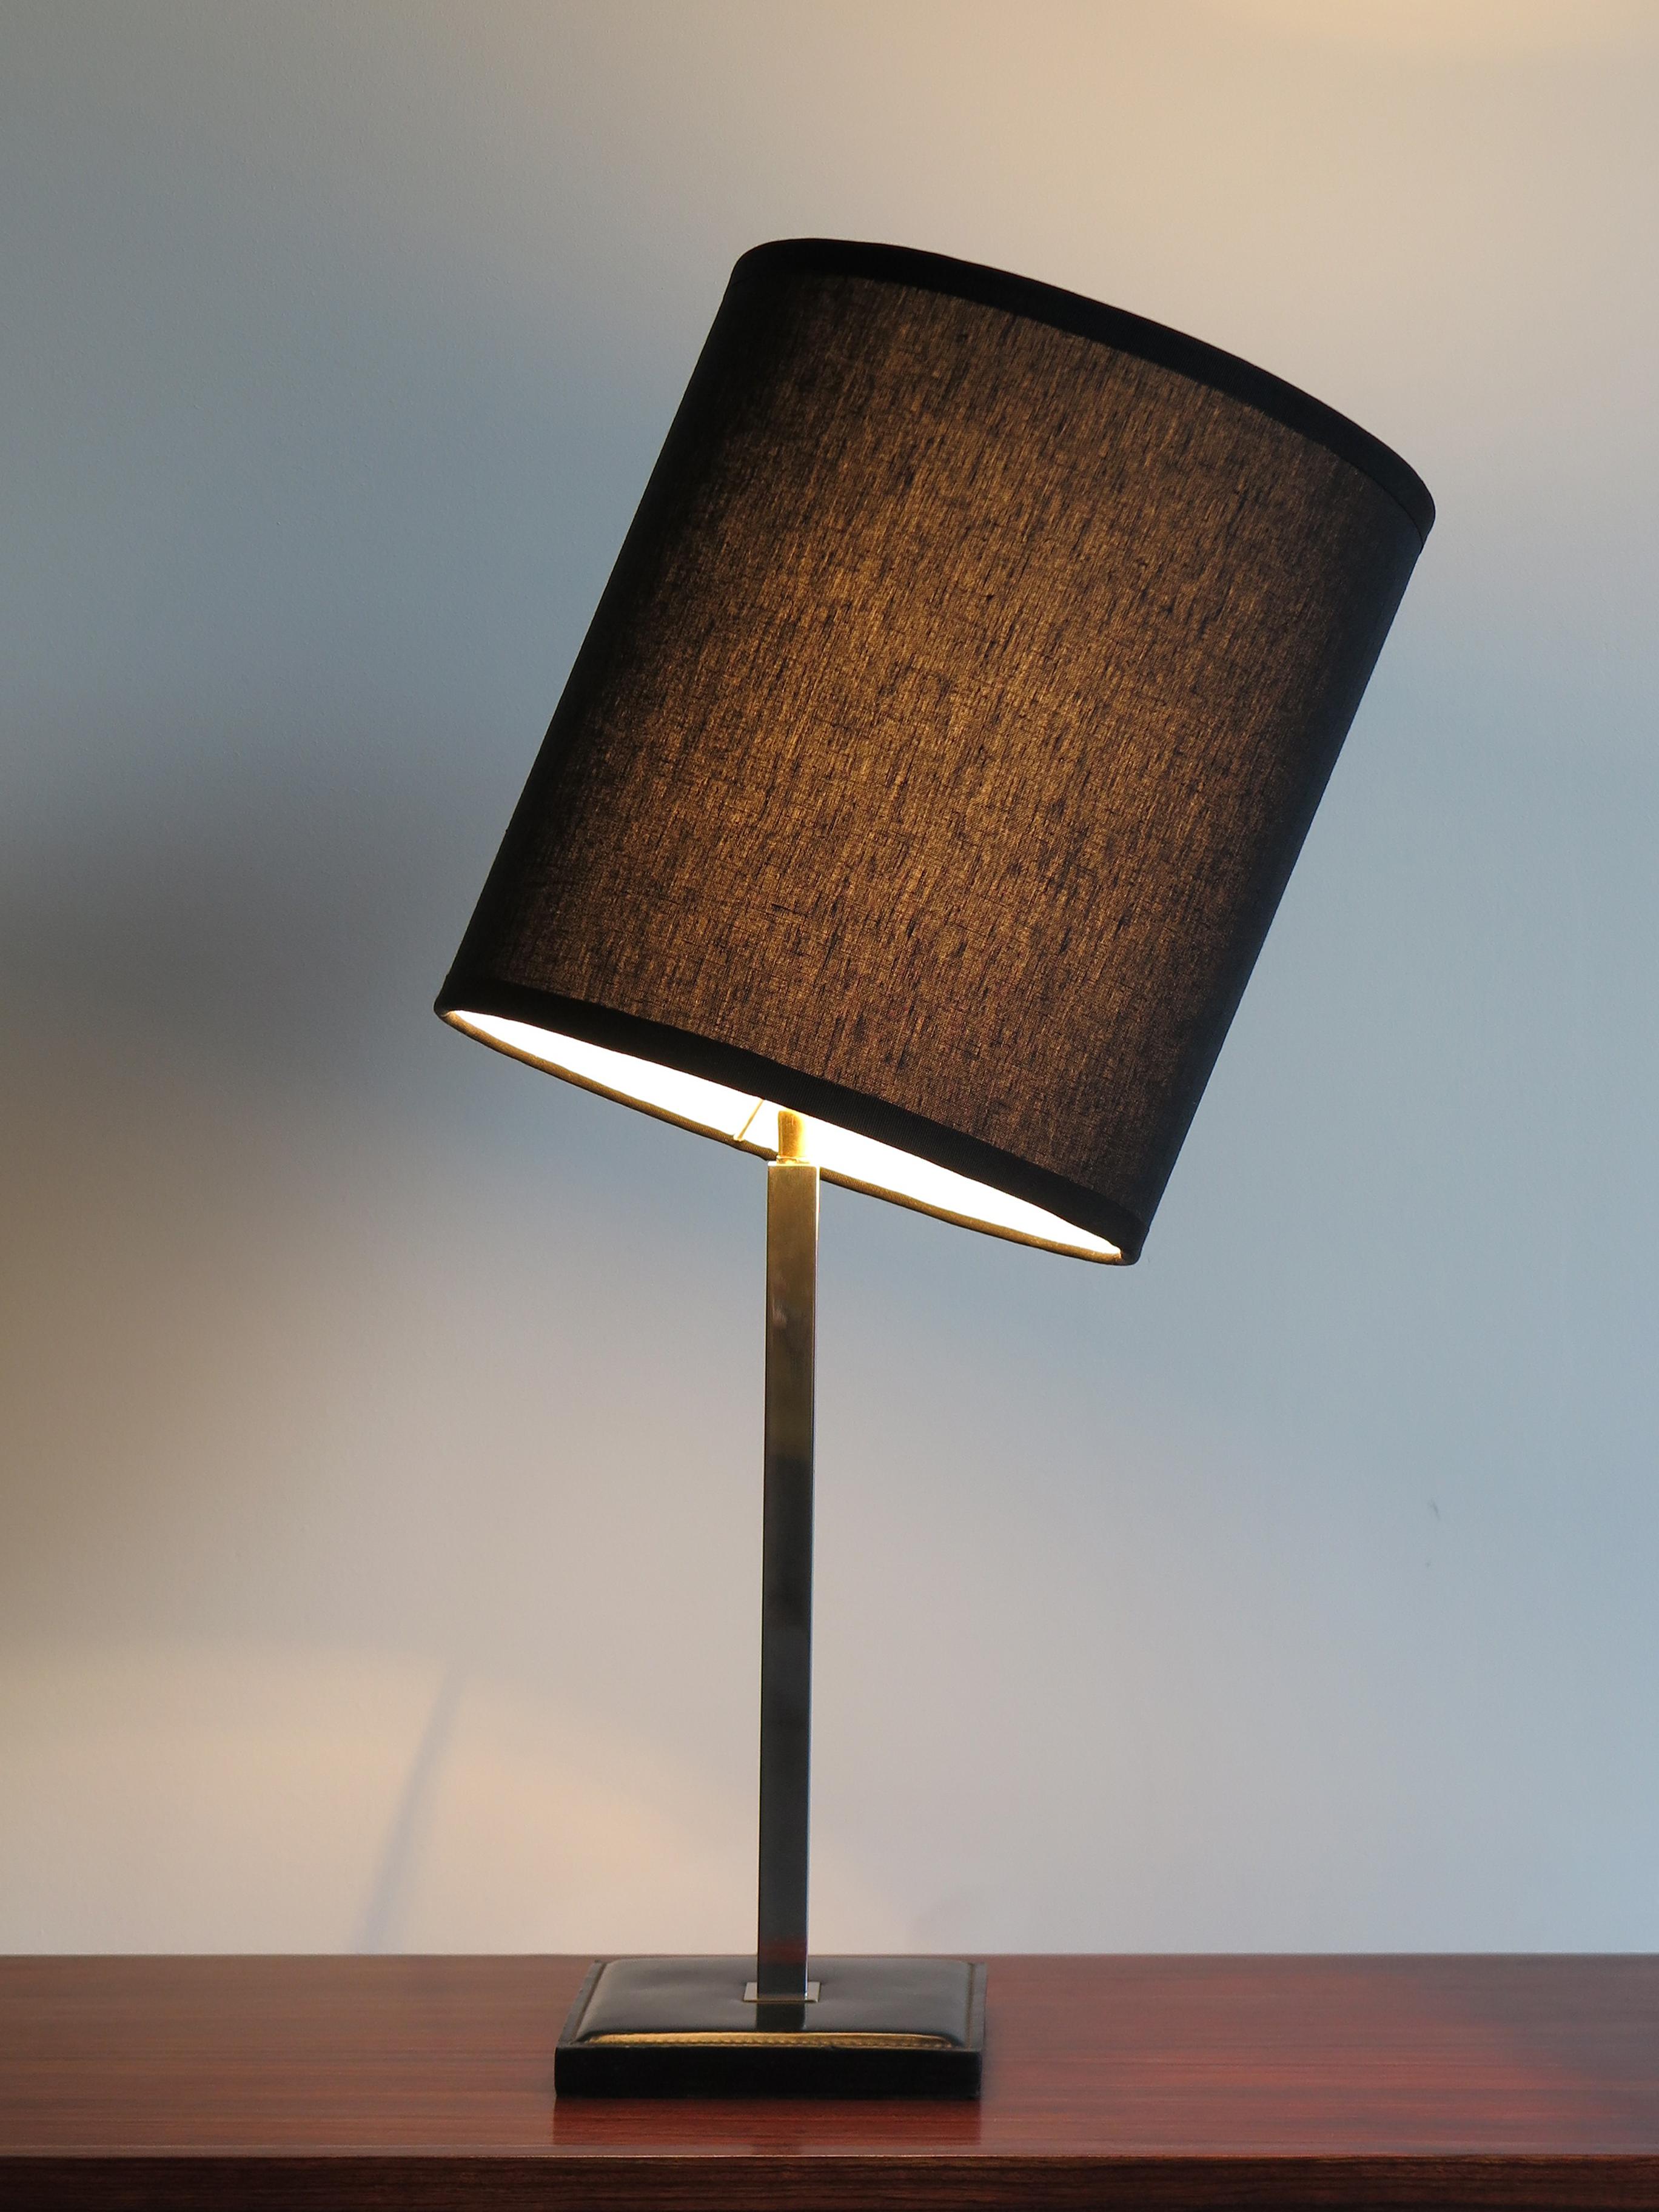 Lampe de table conçue par Delvaux et fabriquée en Belgique avec une base en cuir, une structure chromée et un abat-jour orientable en tissu noir neuf, vers les années 1960.
Signature du producteur sous la base.

Veuillez noter que la base et la